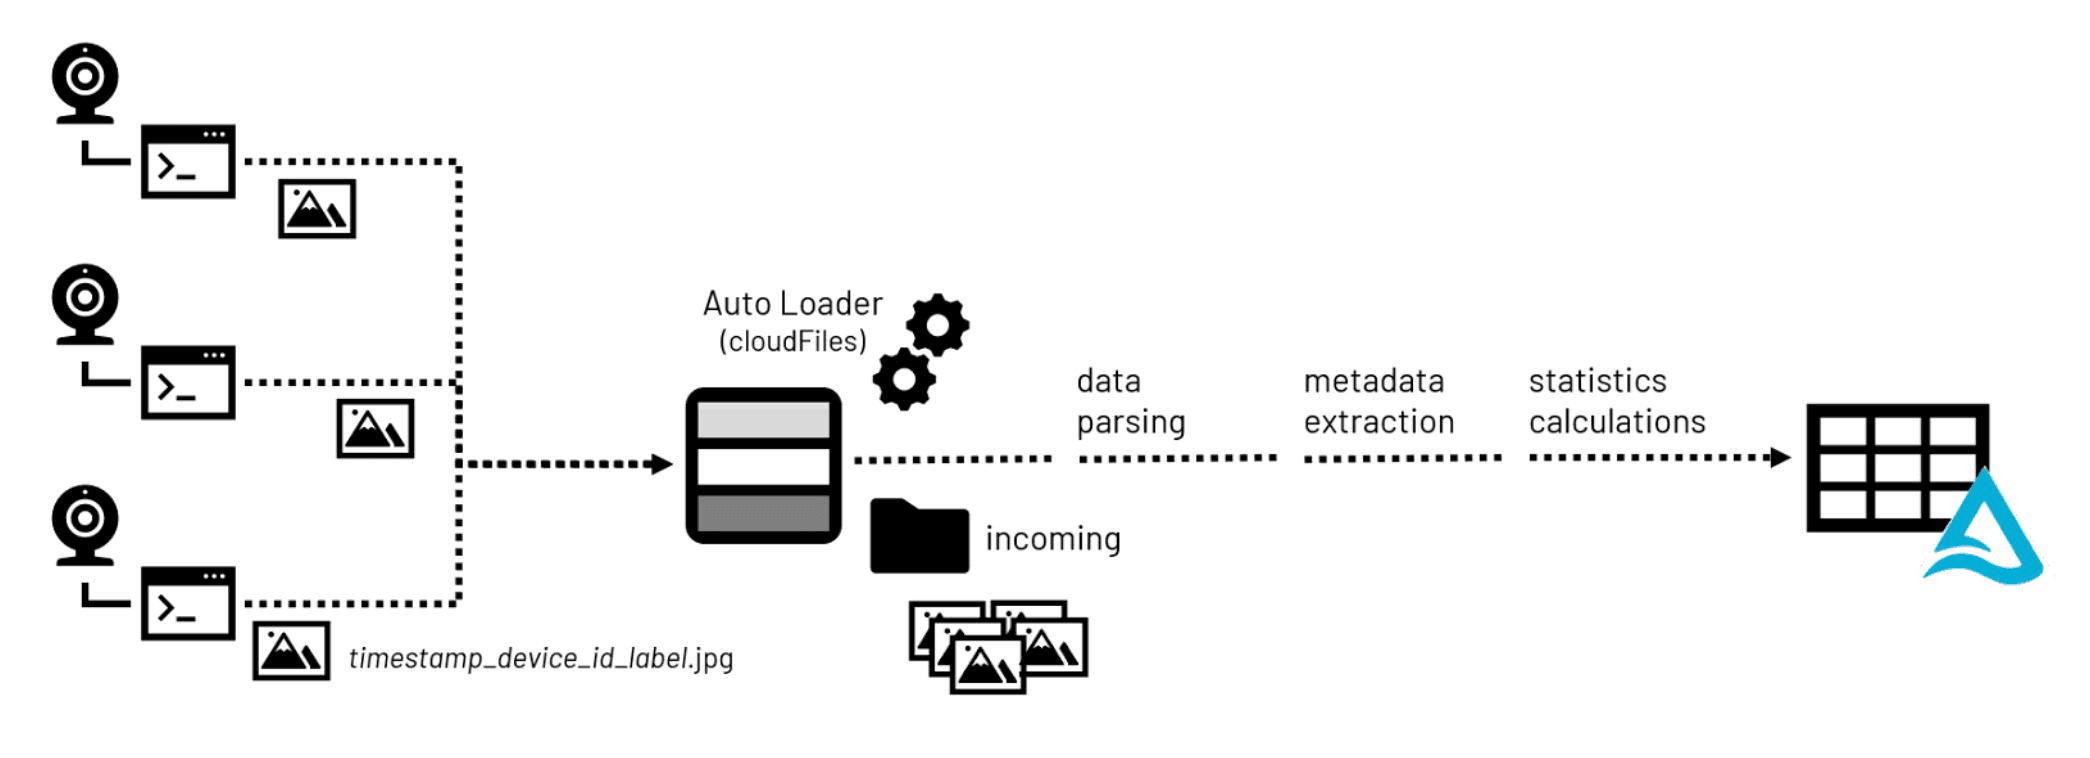 传入图像文件的典型计算机图像数据处理工作流。